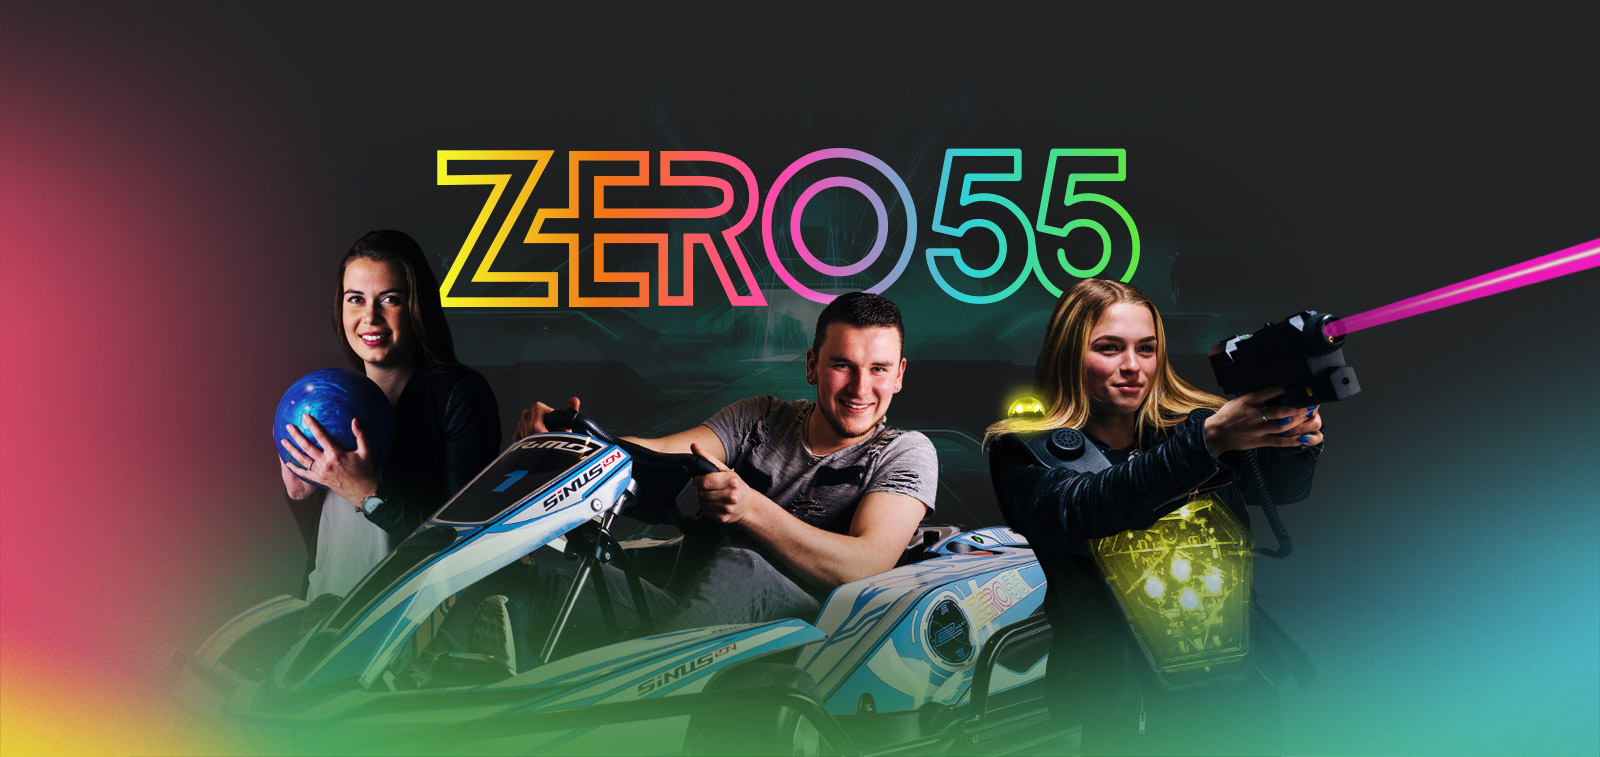 ZERO55 Apeldoorn opent 13 juli 2019 haar deuren. Karten, bowlen en lasergamen in Apeldoorn